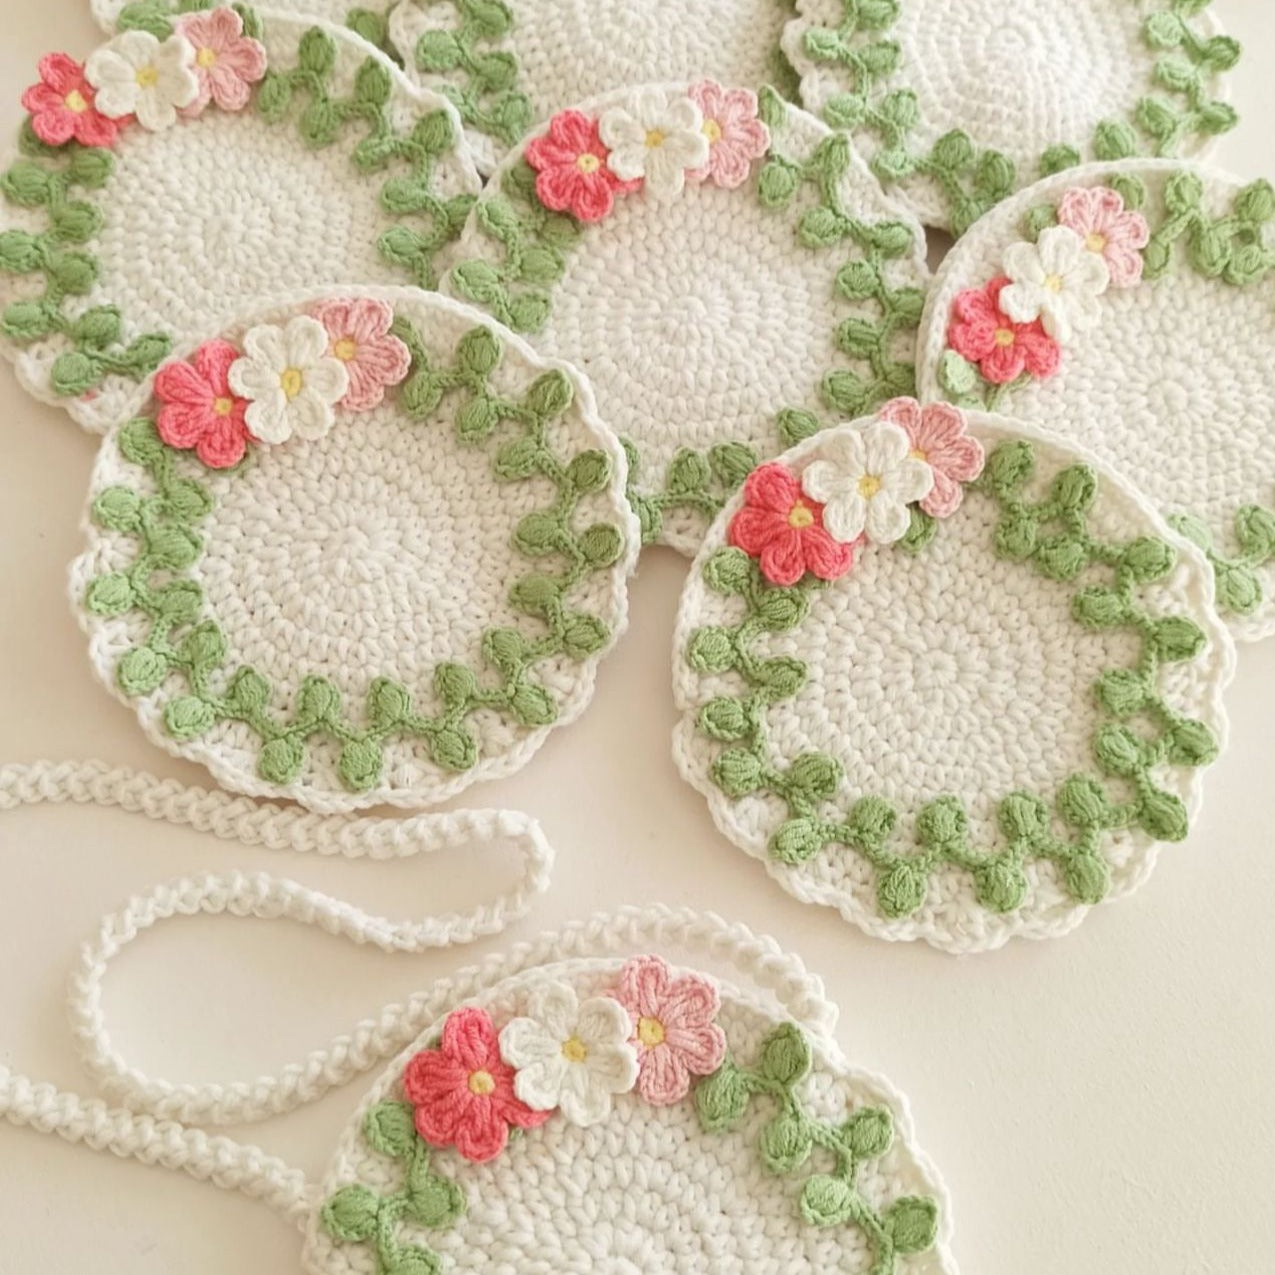 Crochet Children's Bag with Flower Design